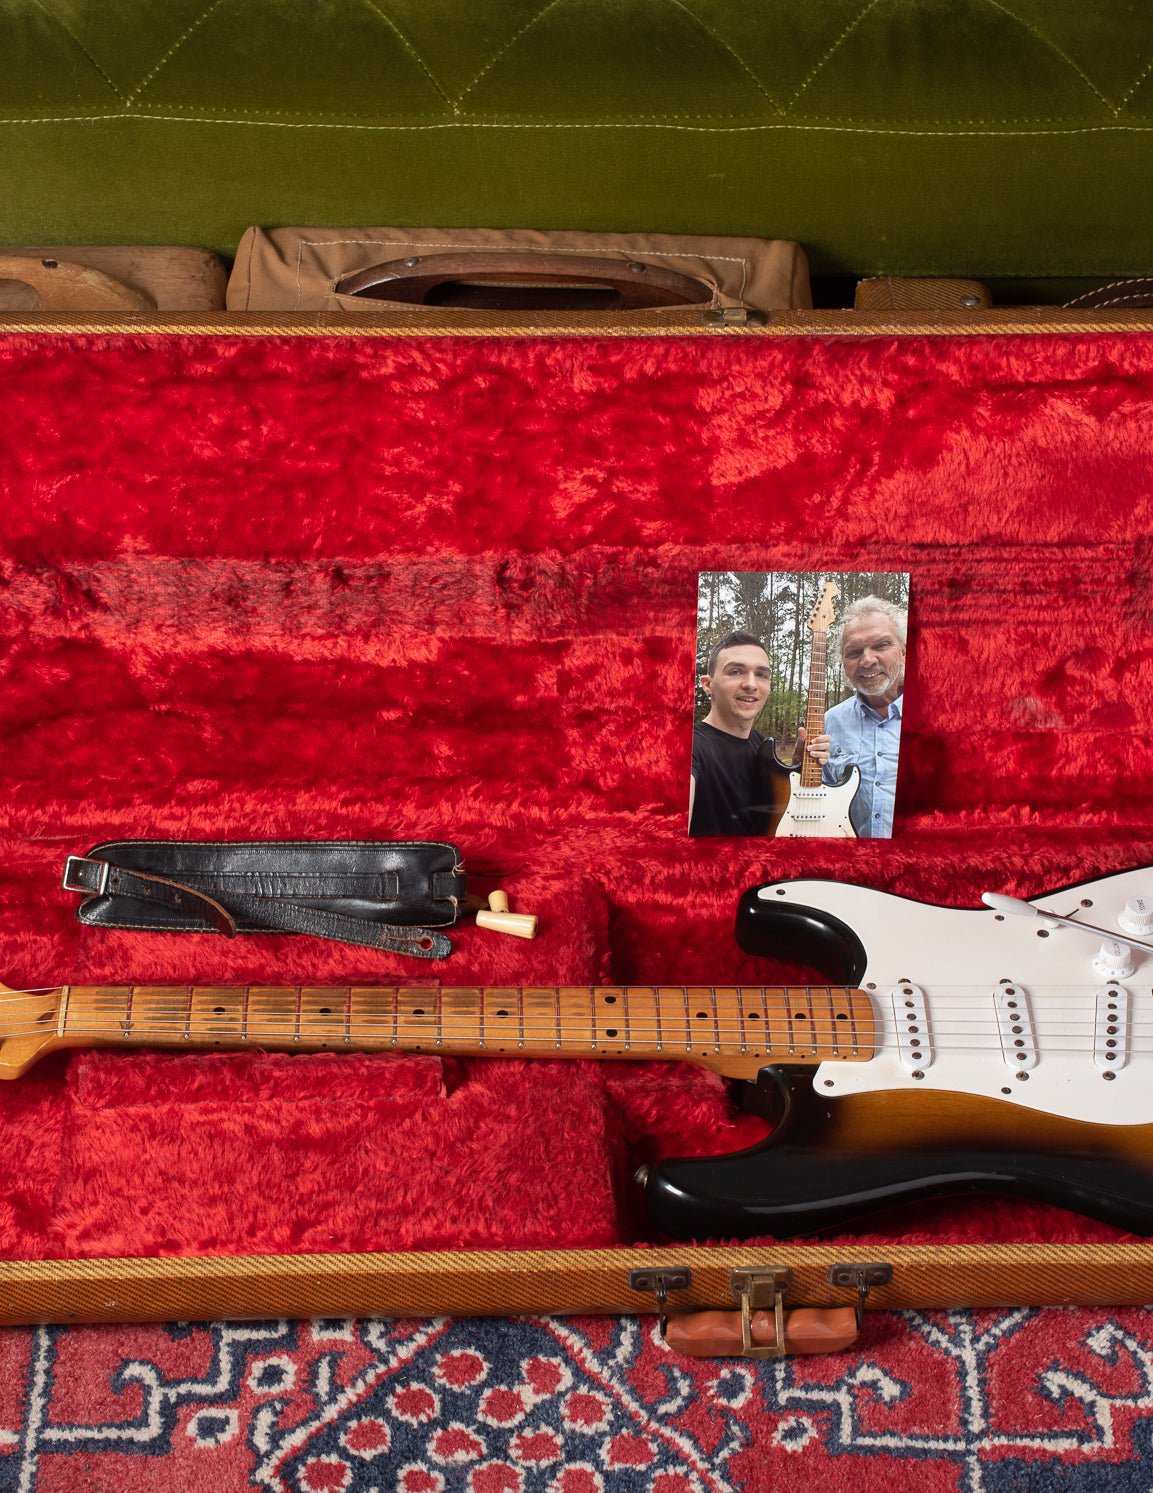 Fender Stratocaster 1954 in original center pocket tweed case